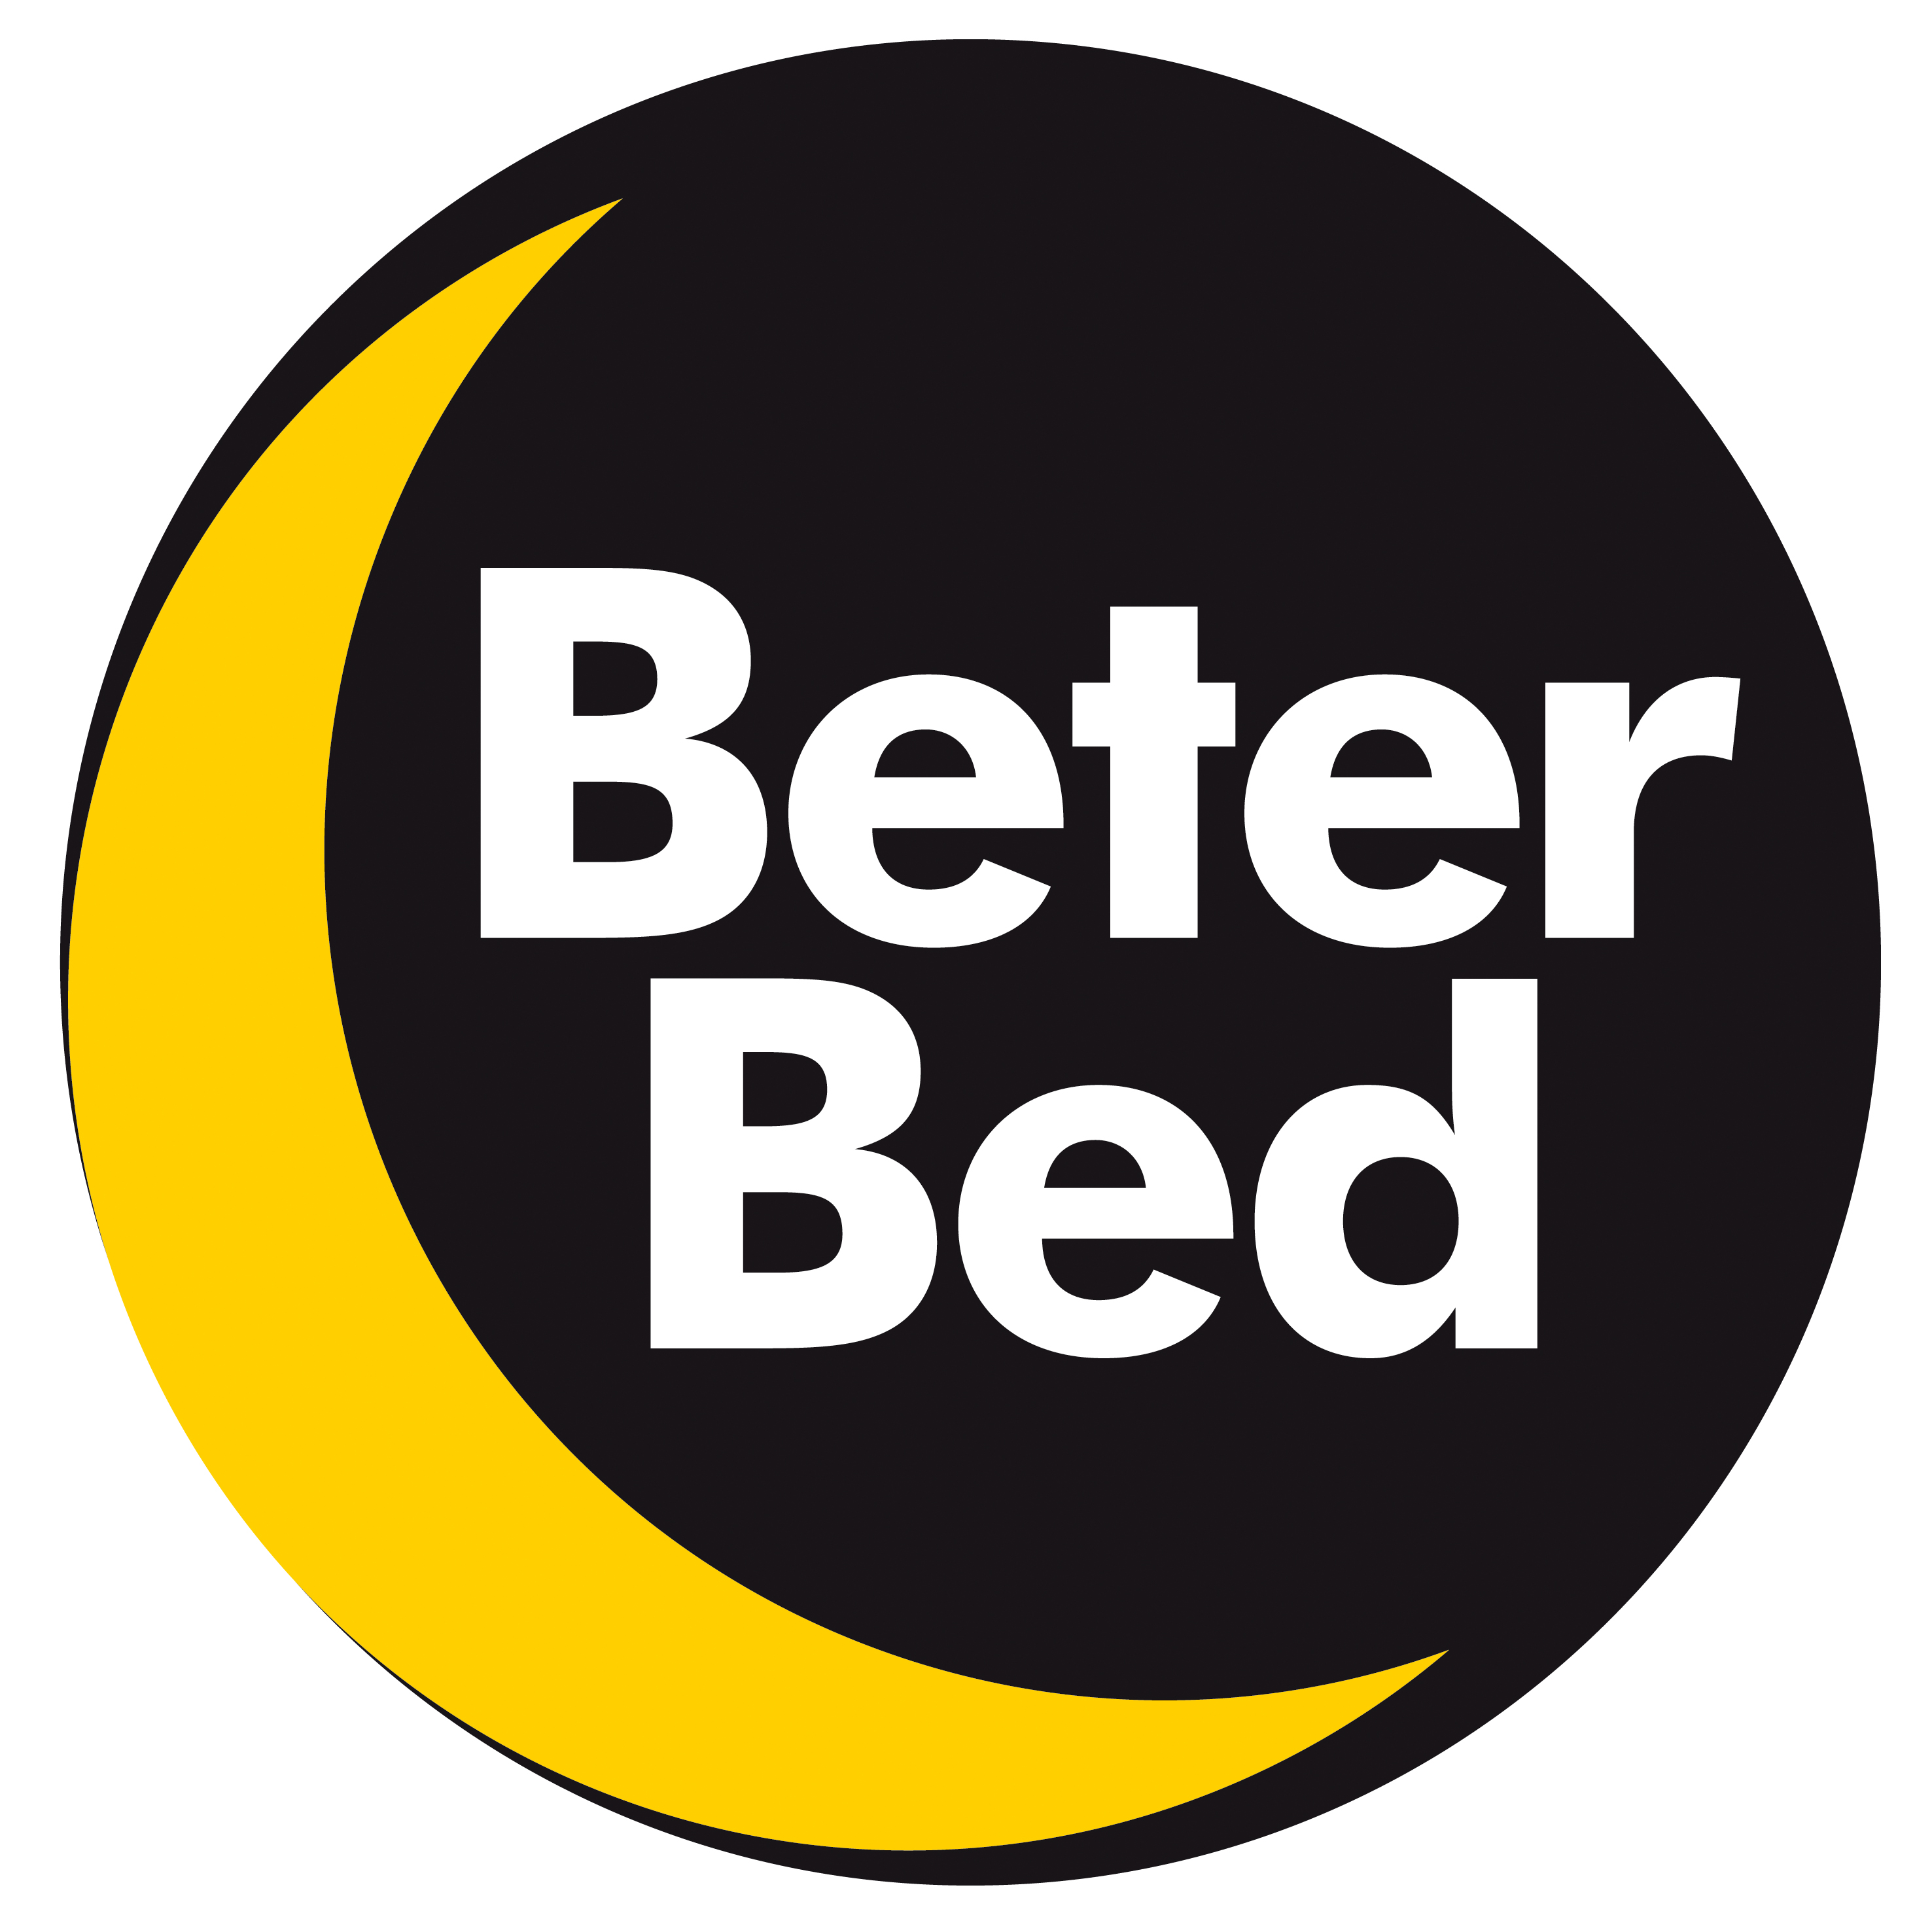 Bed biedt 'matras voor het leven' | www.beddingbusiness.nl